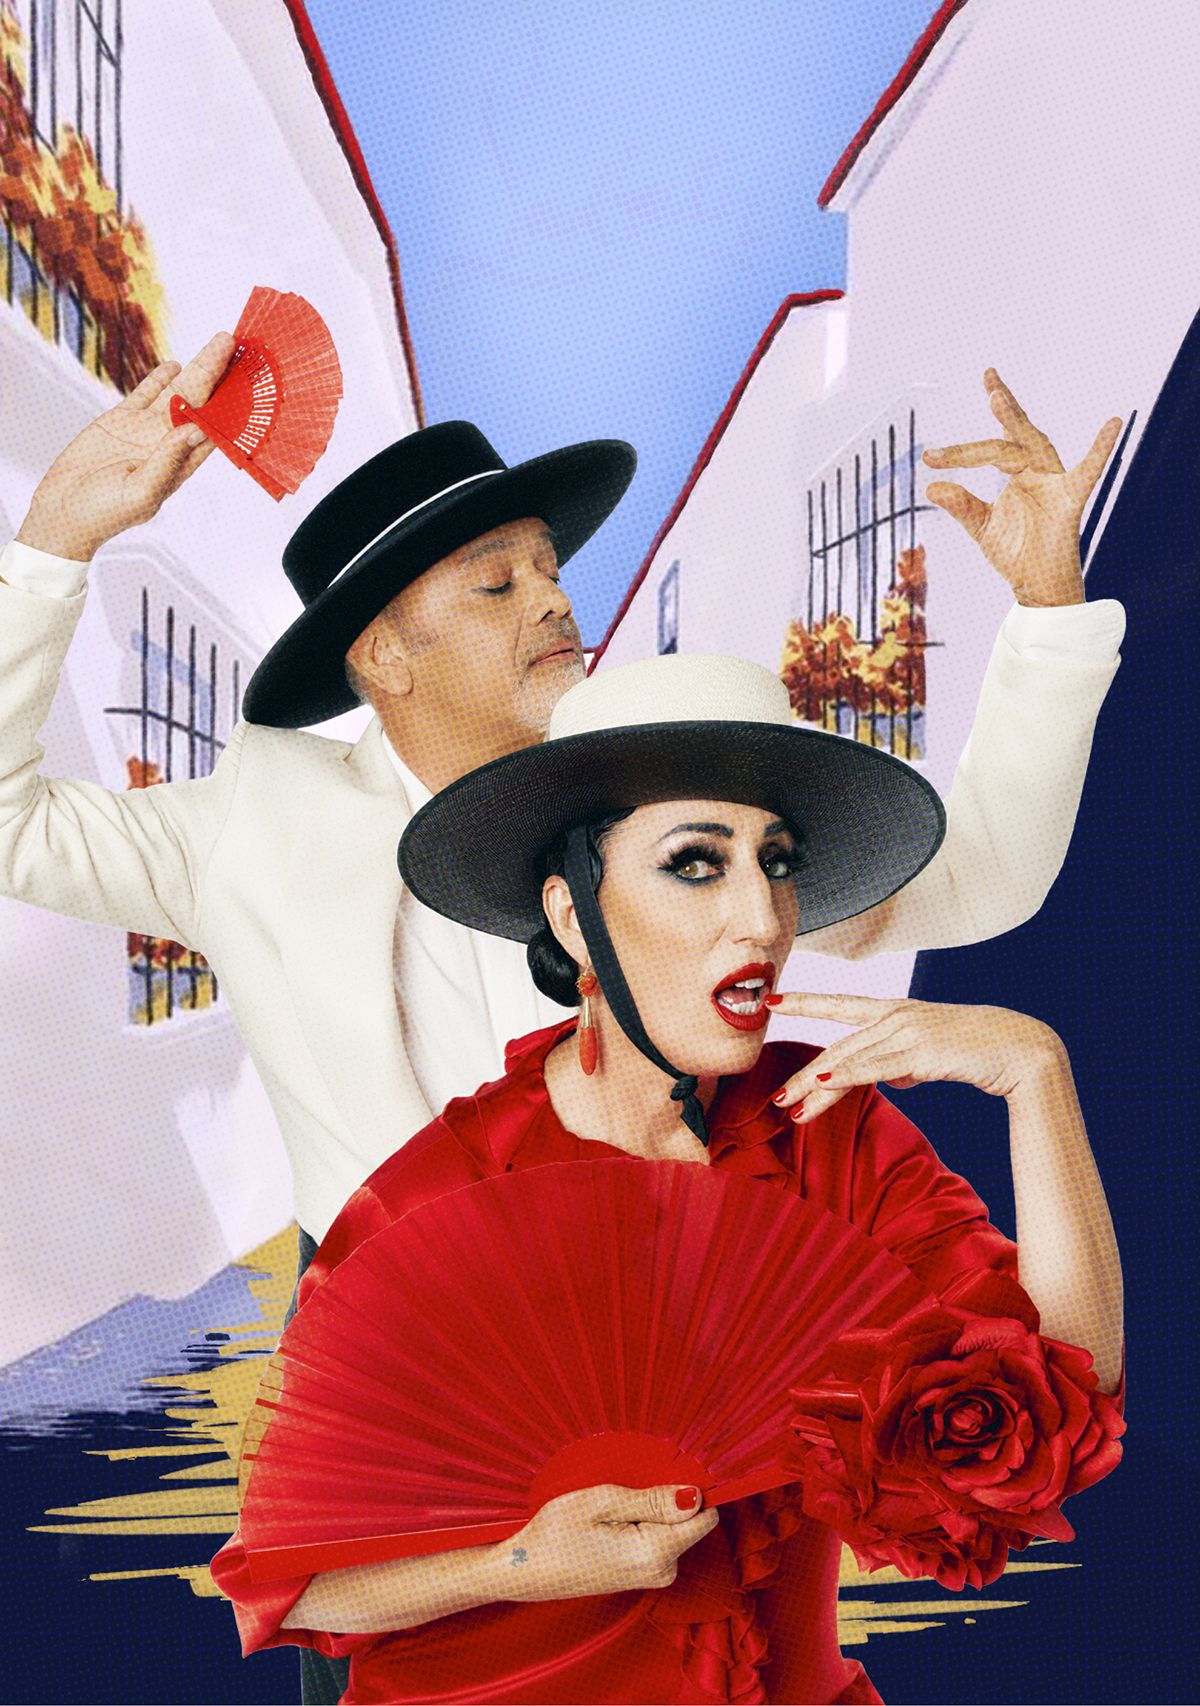 Christian Louboutin celebra su suela roja ícono de moda junto con la  actriz Rossy de Palma – PuroDiseño